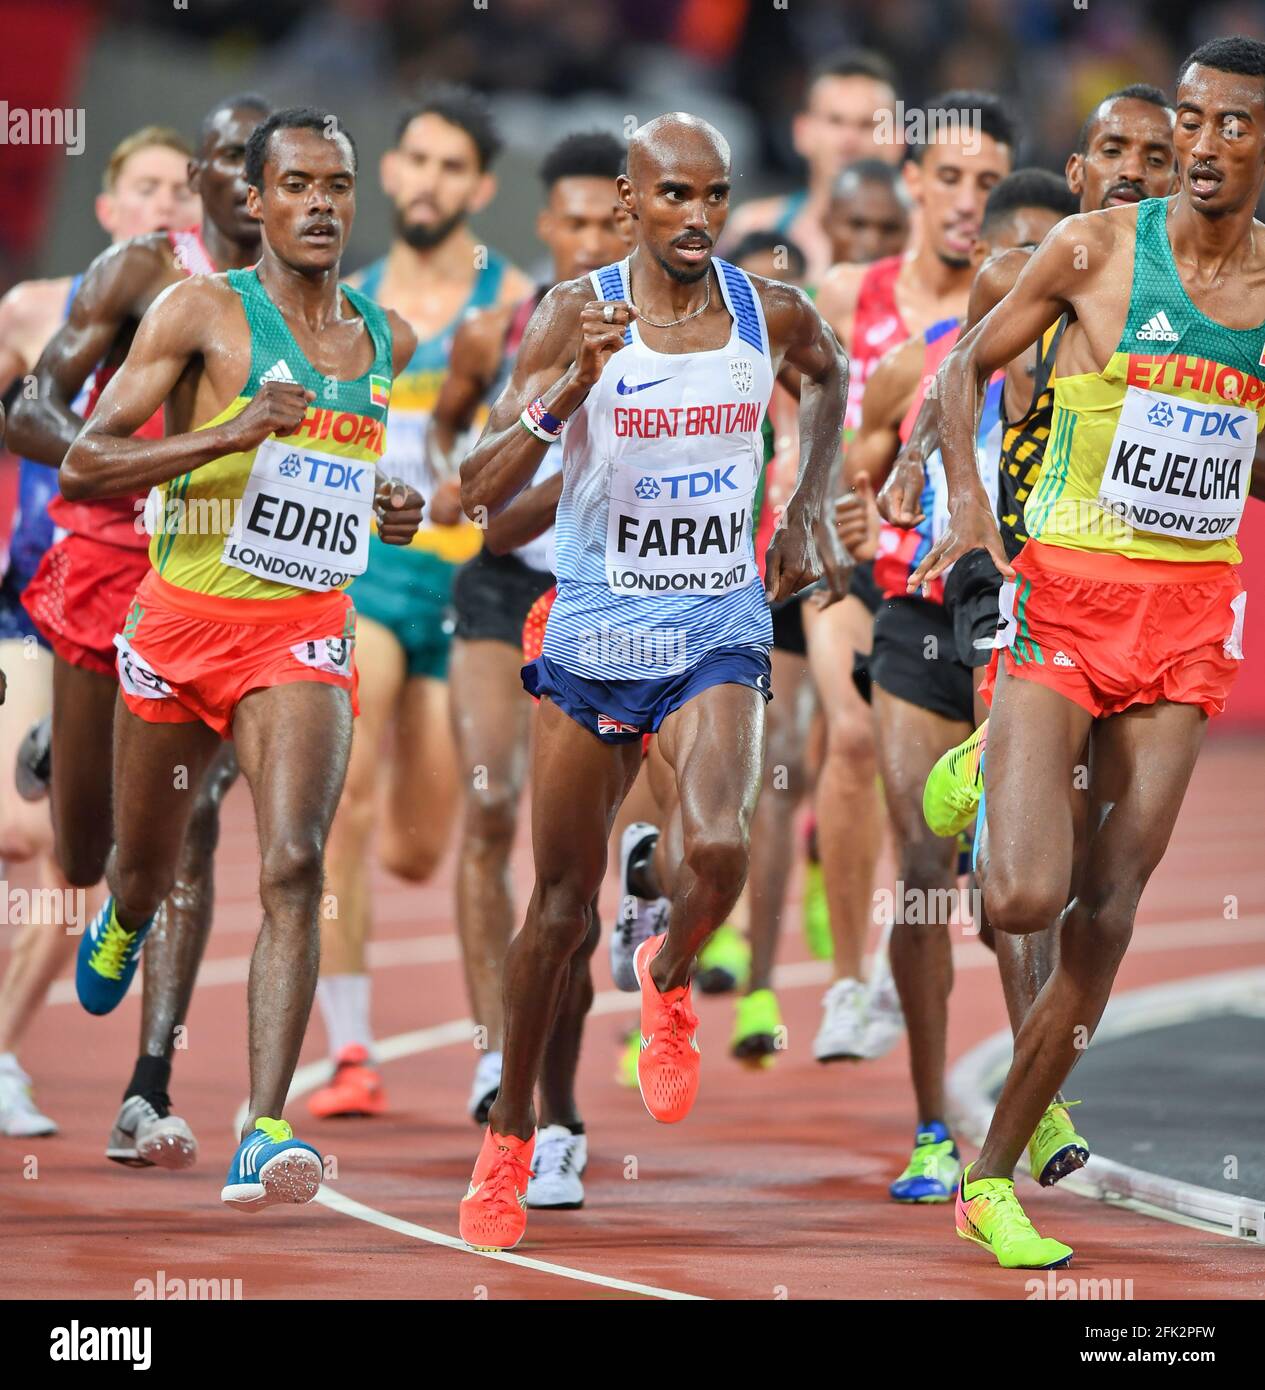 Mo Farah (Grande-Bretagne), Muktar Edris (Ethiopie), Yomif Kejelcha (Ehtiopia). 5000 mètres hommes, qualification. Championnats du monde de l'IAAF Londres 2017 Banque D'Images